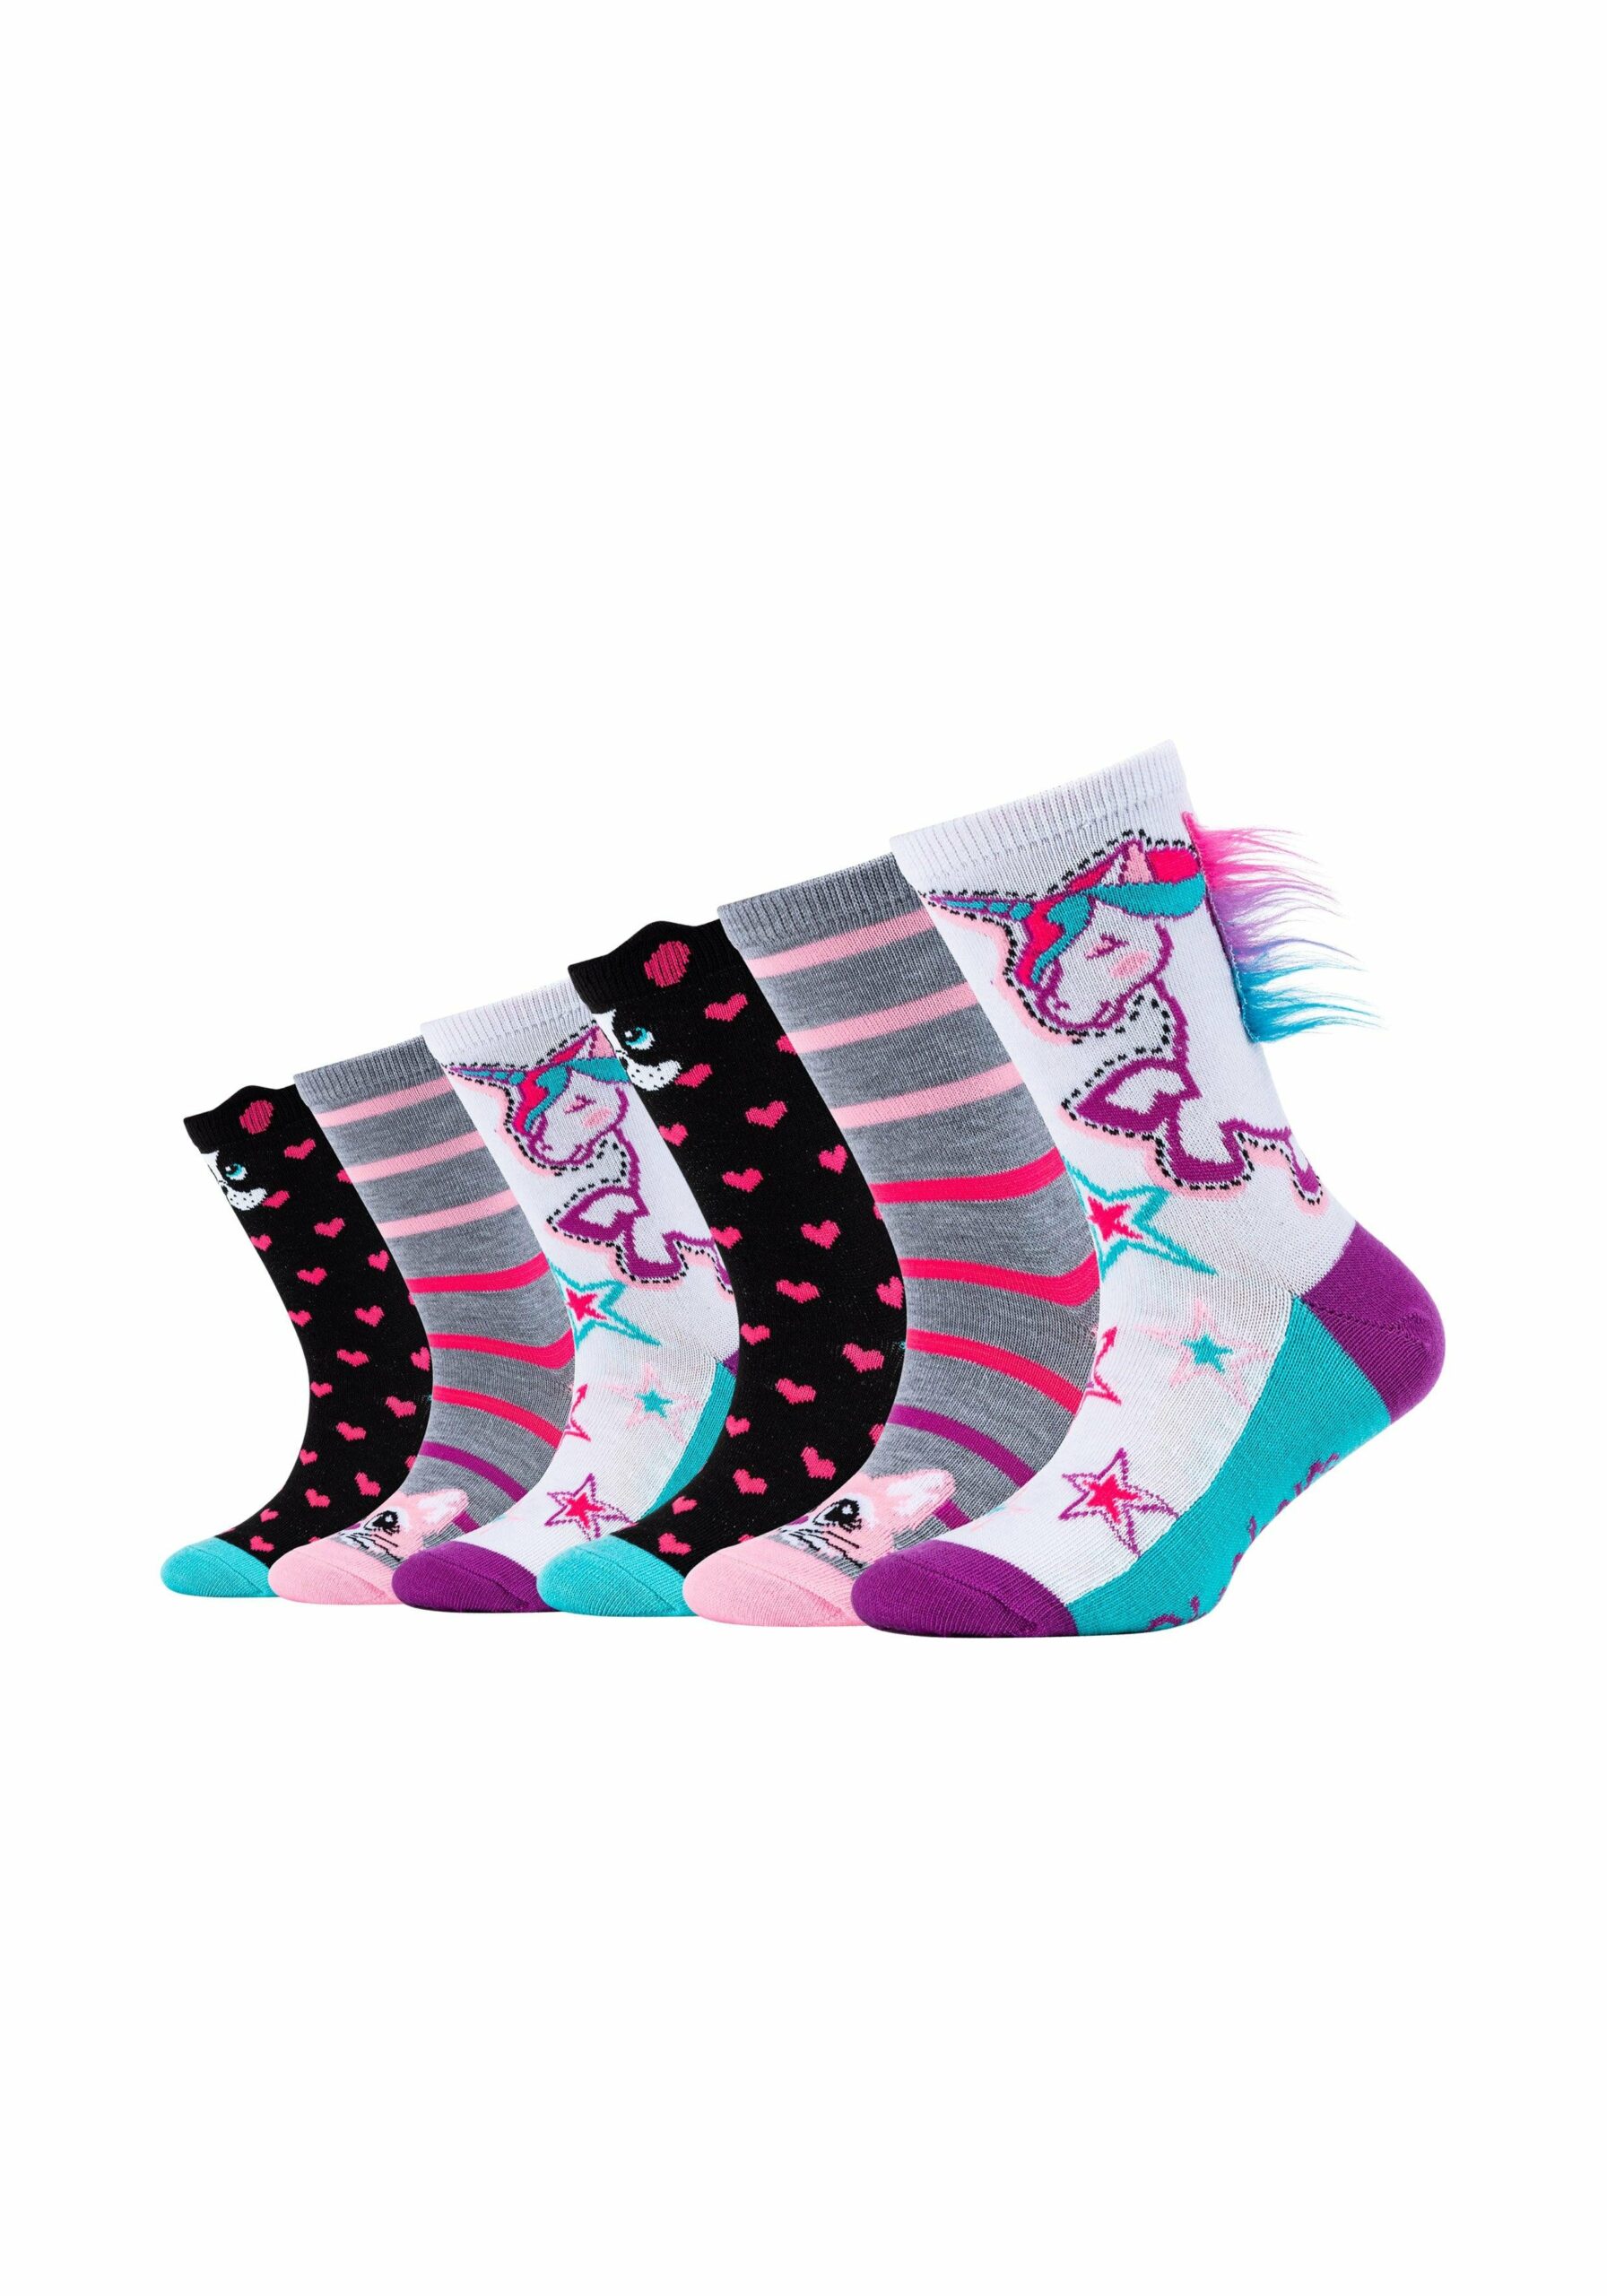 Skechers Kinder-Socken Tier-Motiv 6er Pack white kaufen bei | Lange Socken